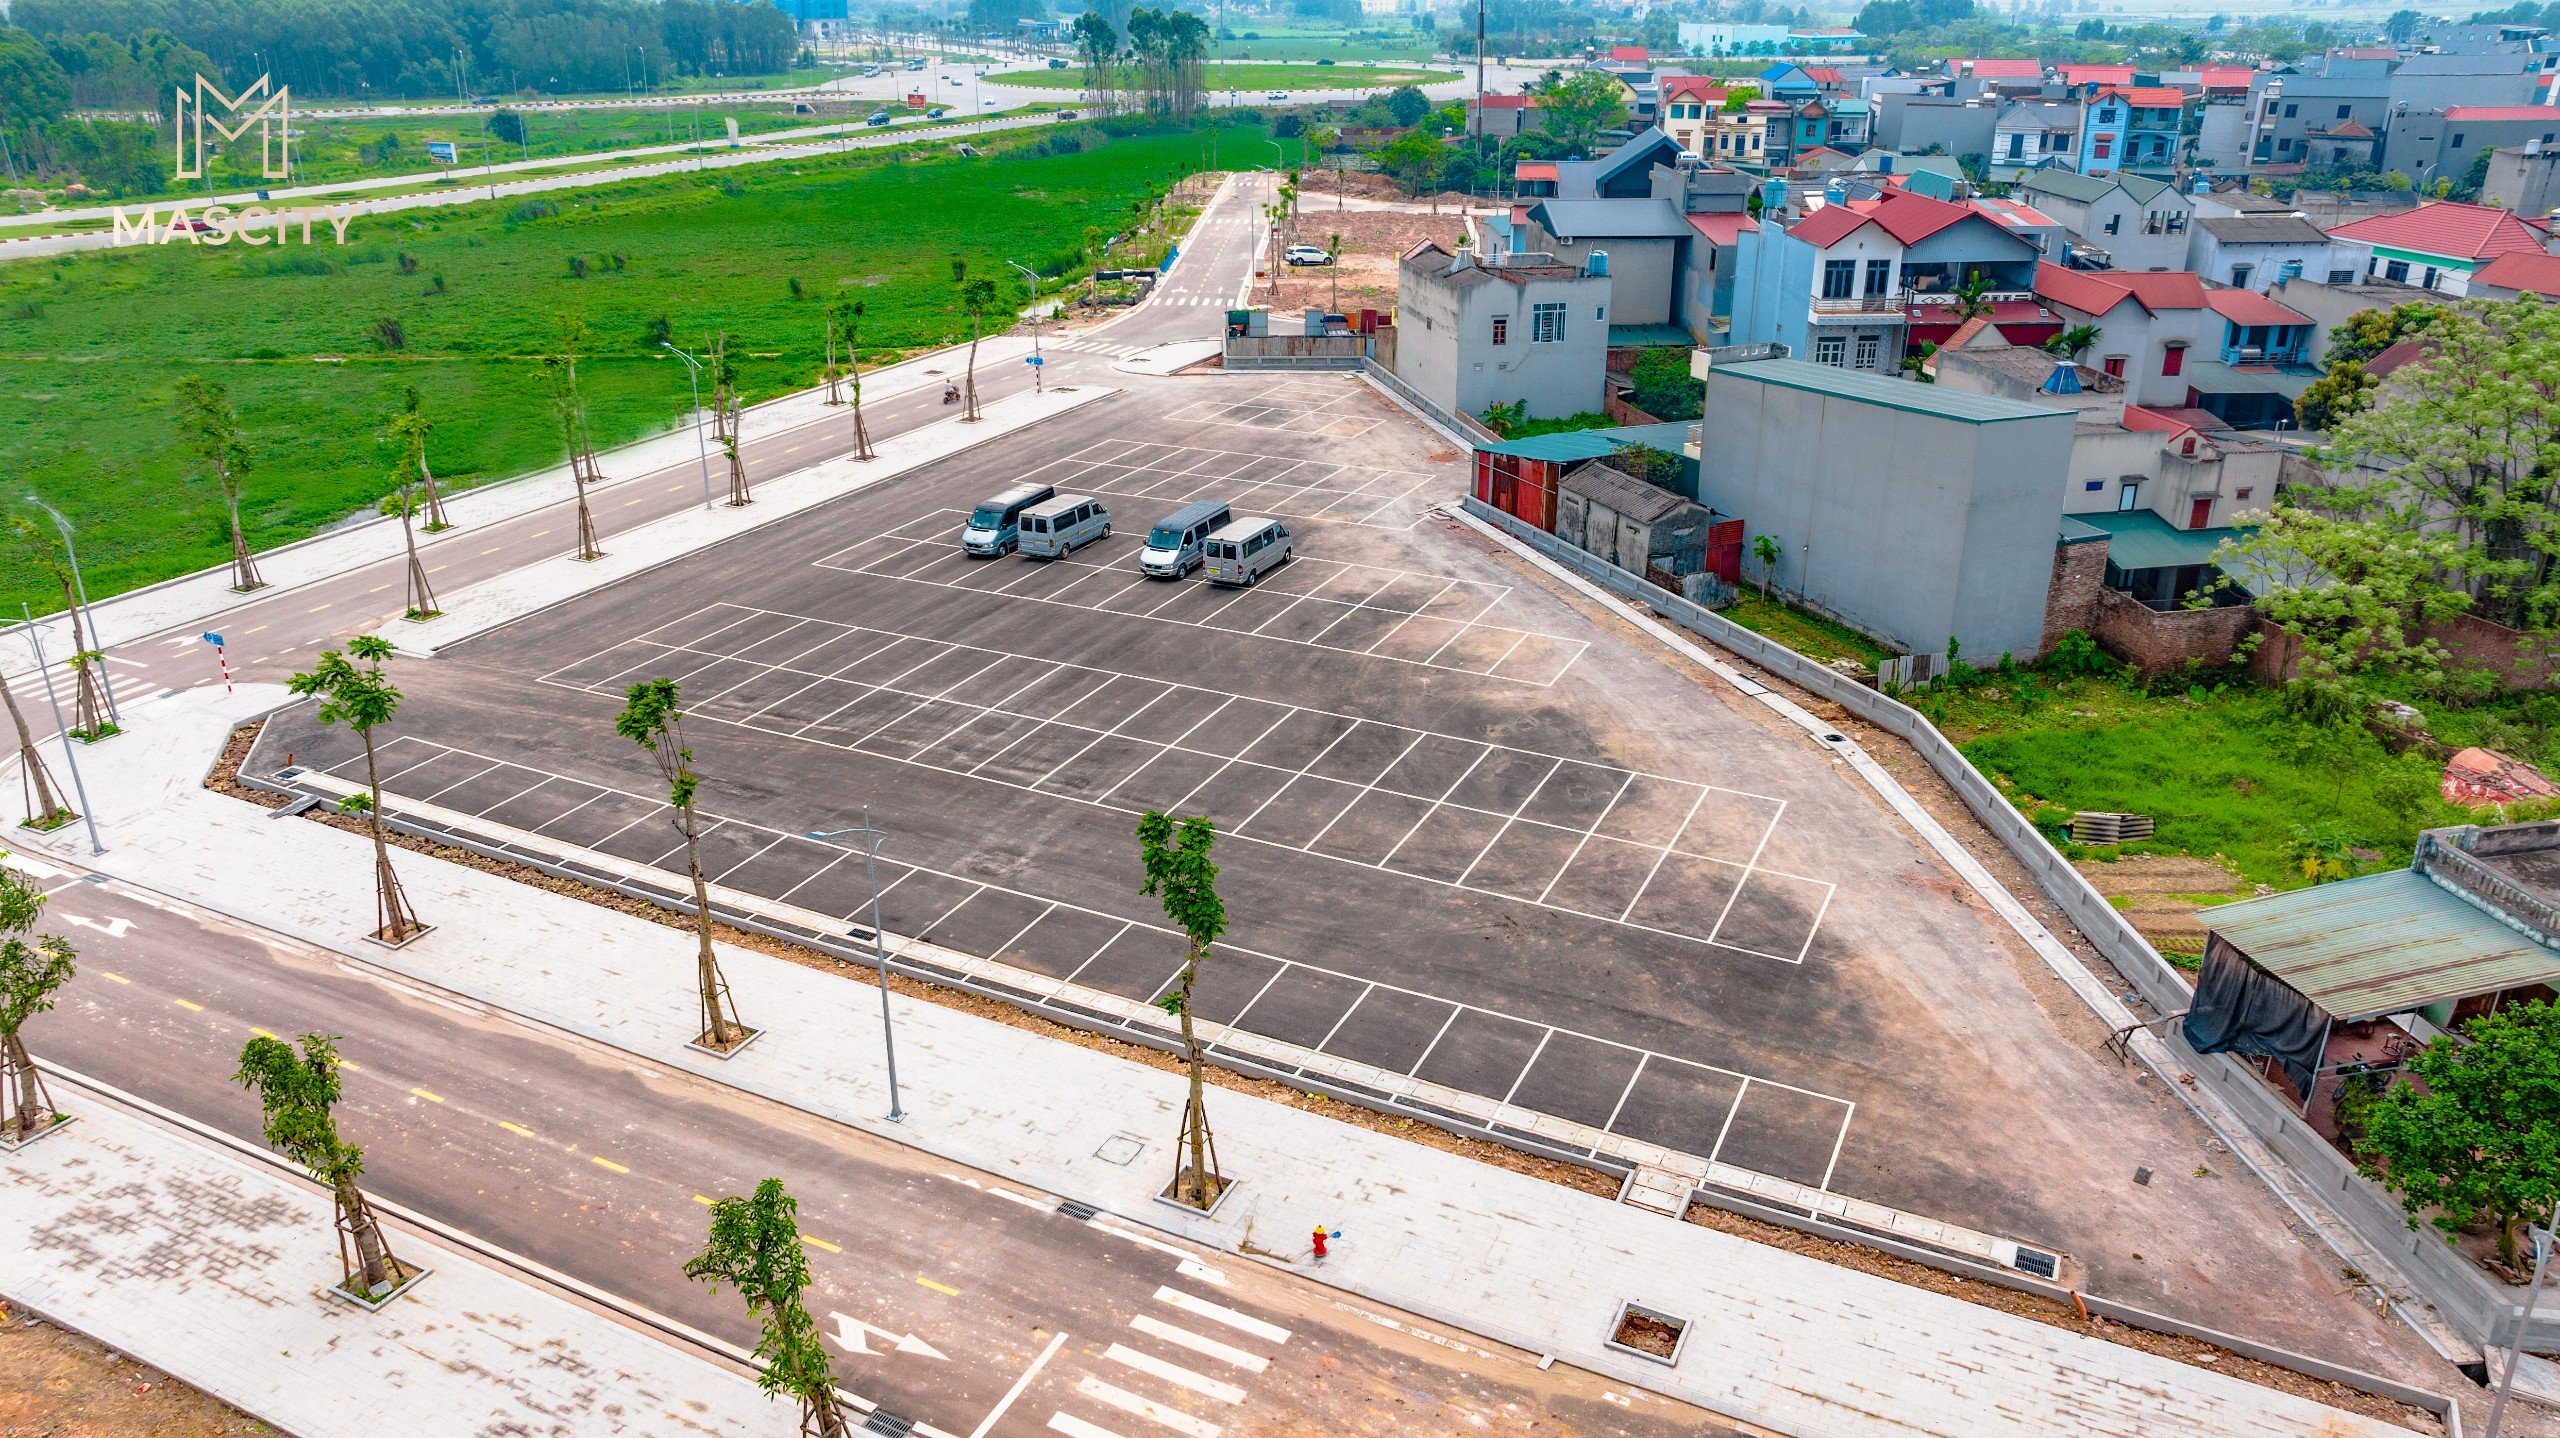 Bán đất nền trung tâm thành phố Bắc Giang, vị trí đắc địa, CK 6%, HTLS 0% đến 70% trong 12 tháng 2